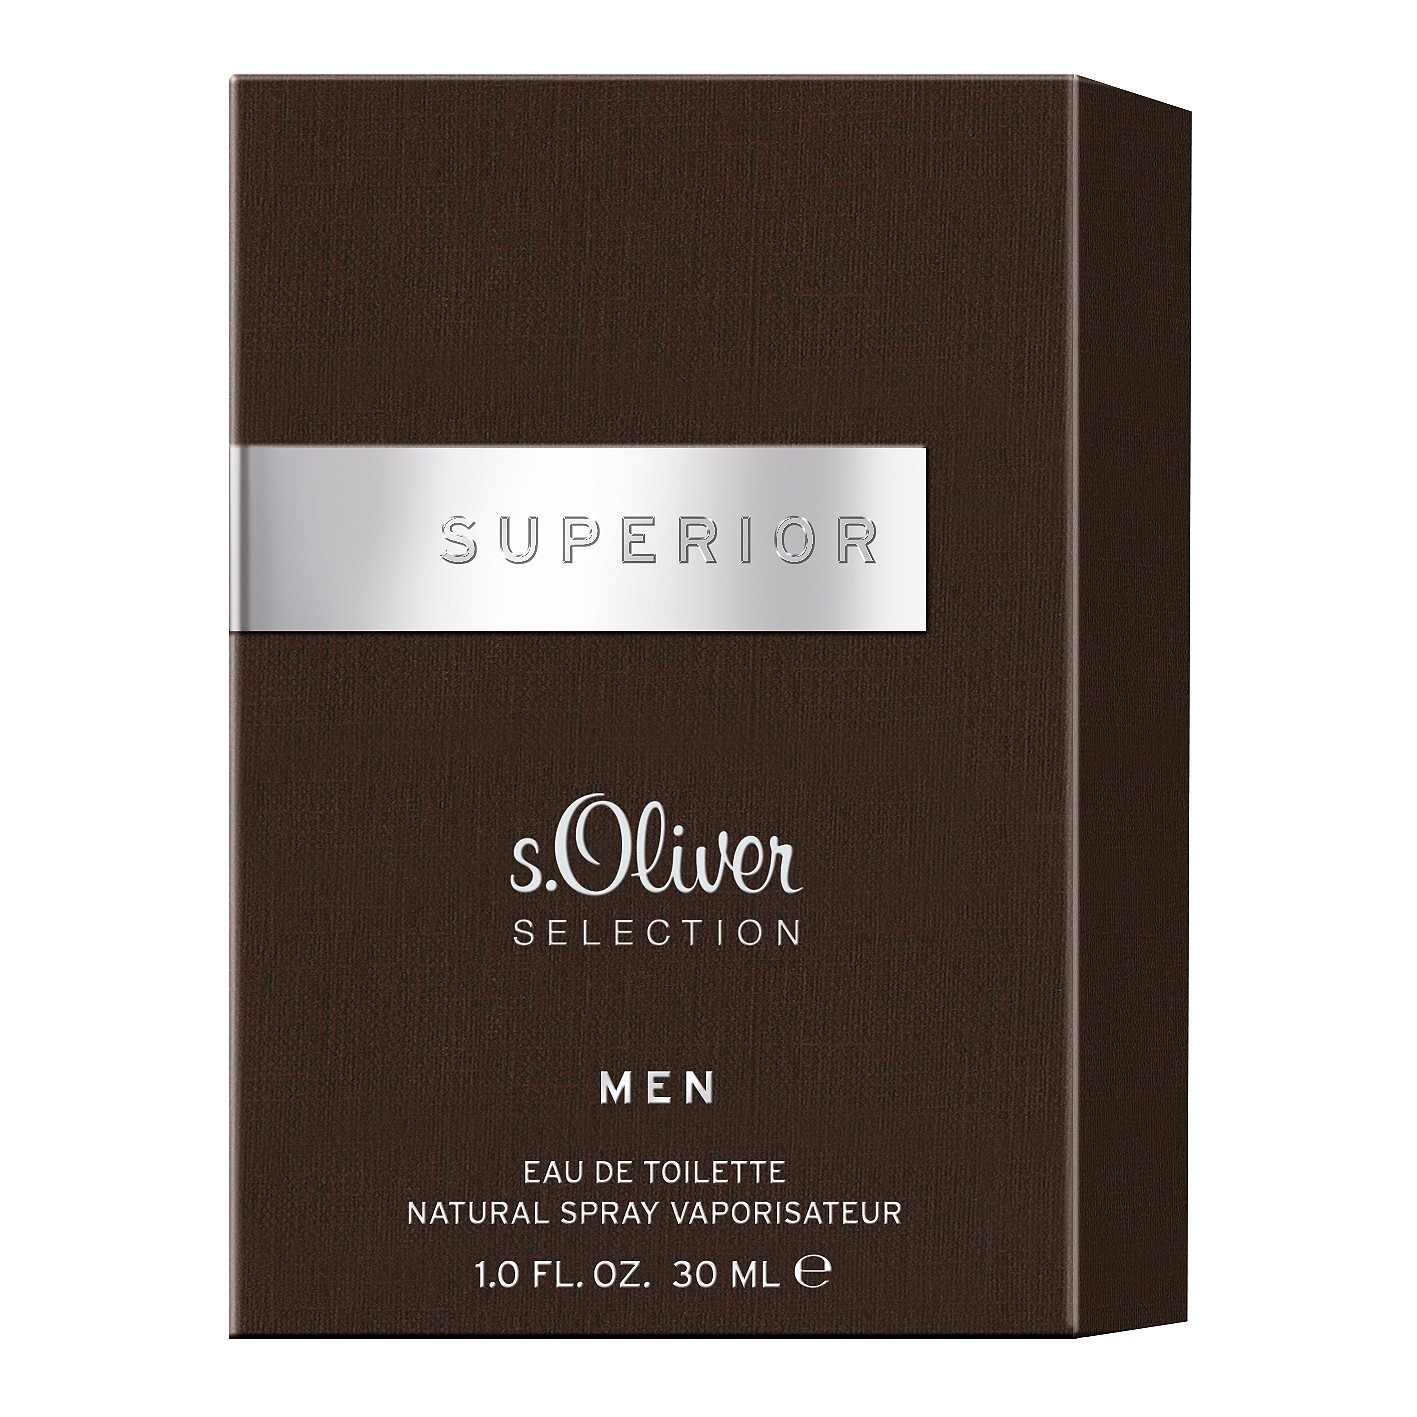 S.Oliver Selection Superior Men Eau de Toilette 30ml